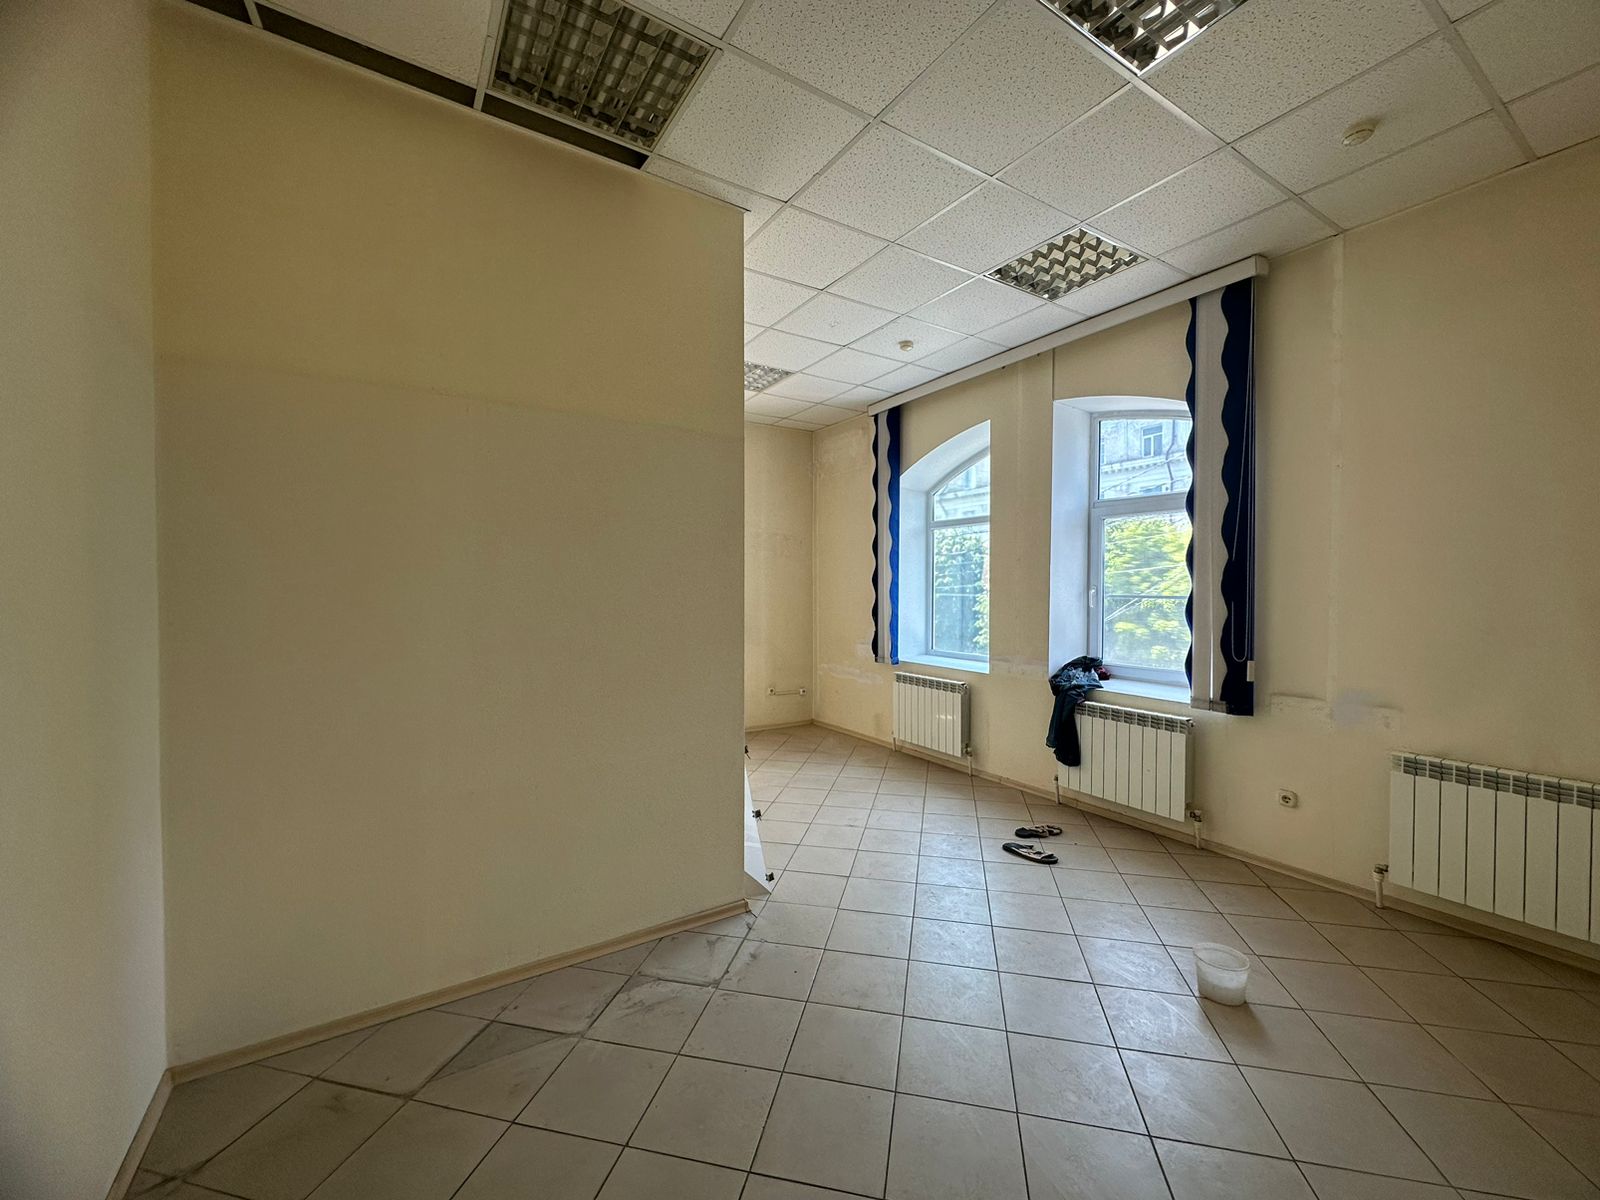 Предлагаем к аренде офисы на 2ом этаже по ул. Карла Маркса д.53, площадью  12 м², напрямую от собственника._6